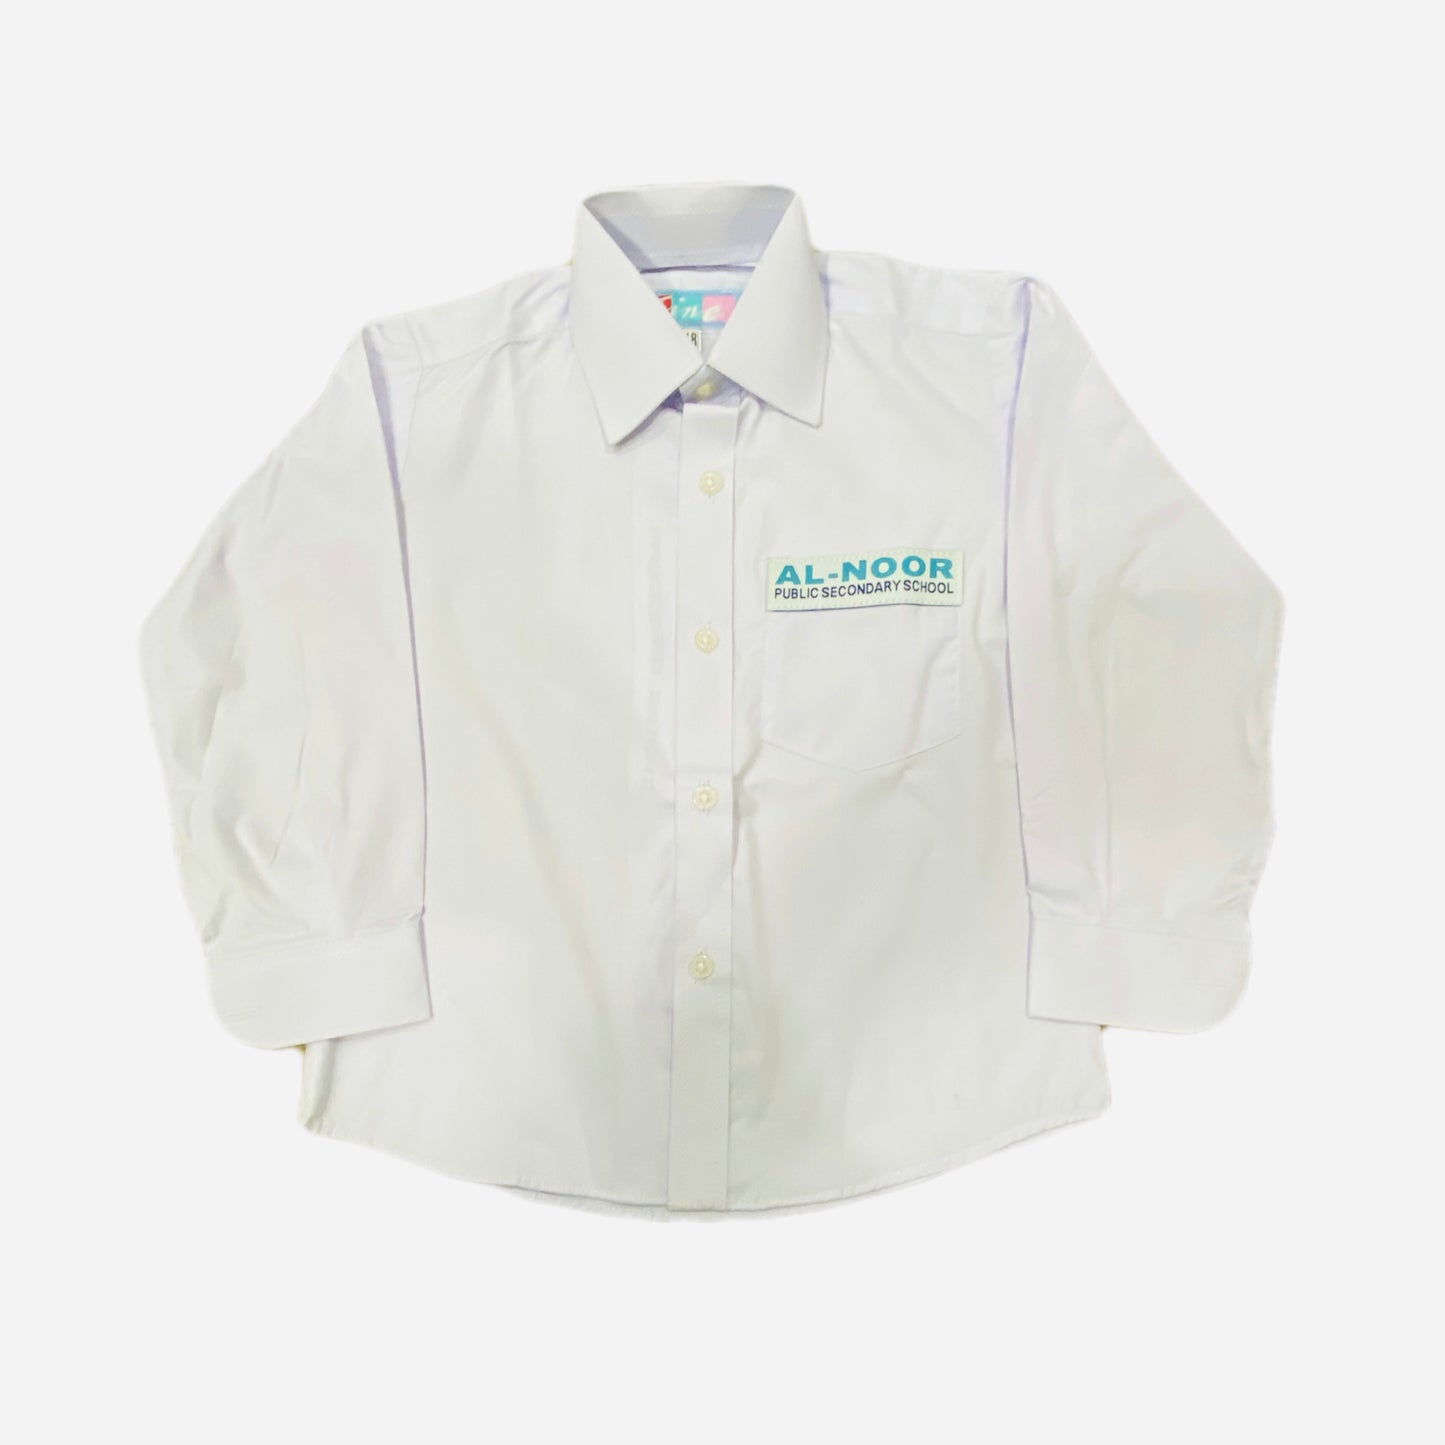 Alnoor School (Boys Shirt)